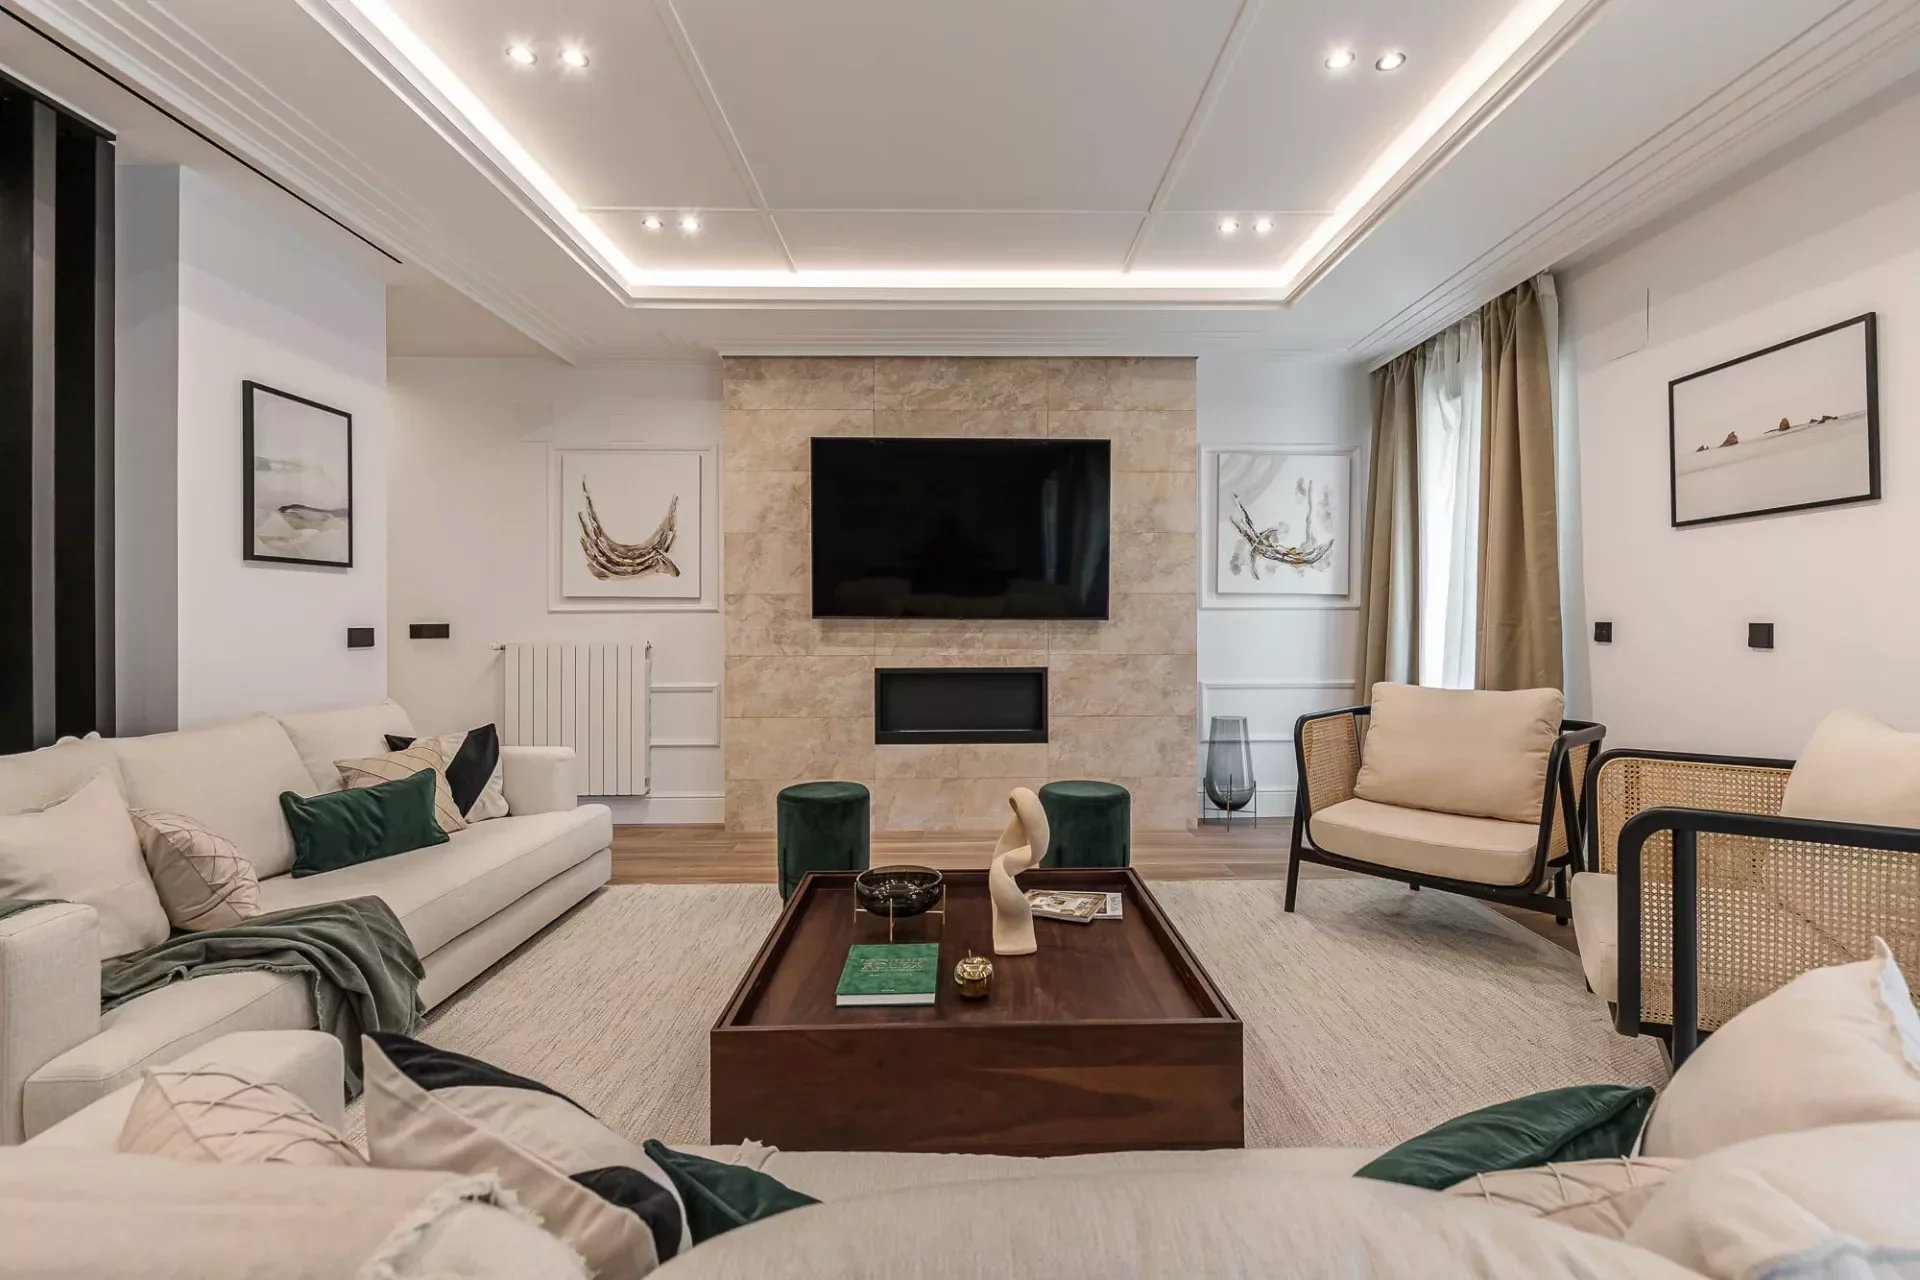 Madrid - Goya - Barrio Salamanca - Appartement flambant neuf avec 3 chambres en suite. - picture 2 title=